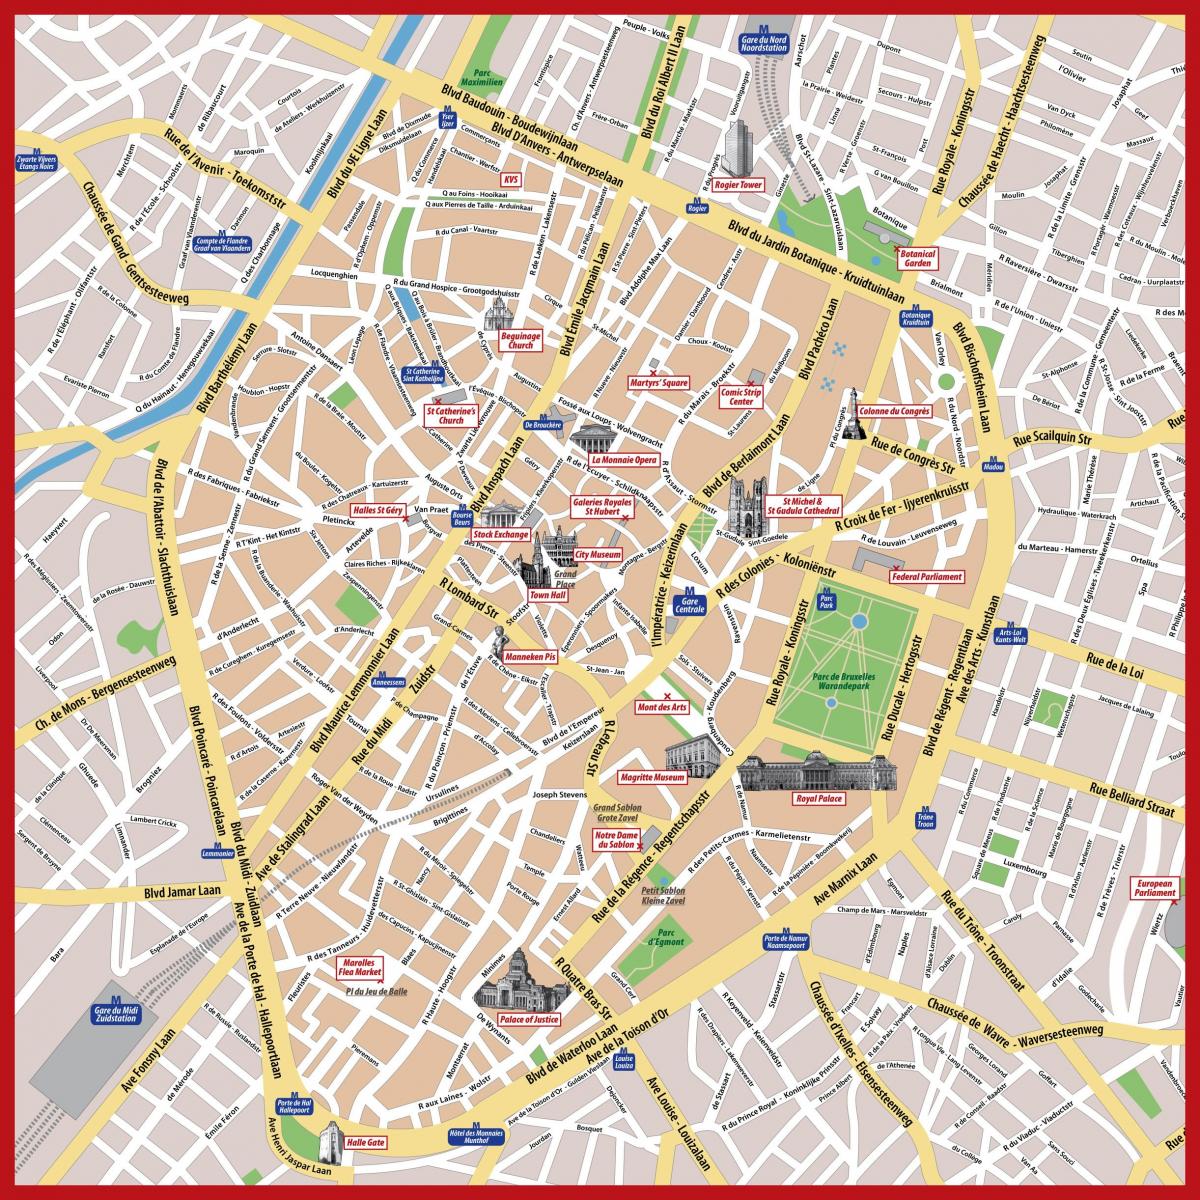 La ciudad de bruselas mapa pdf